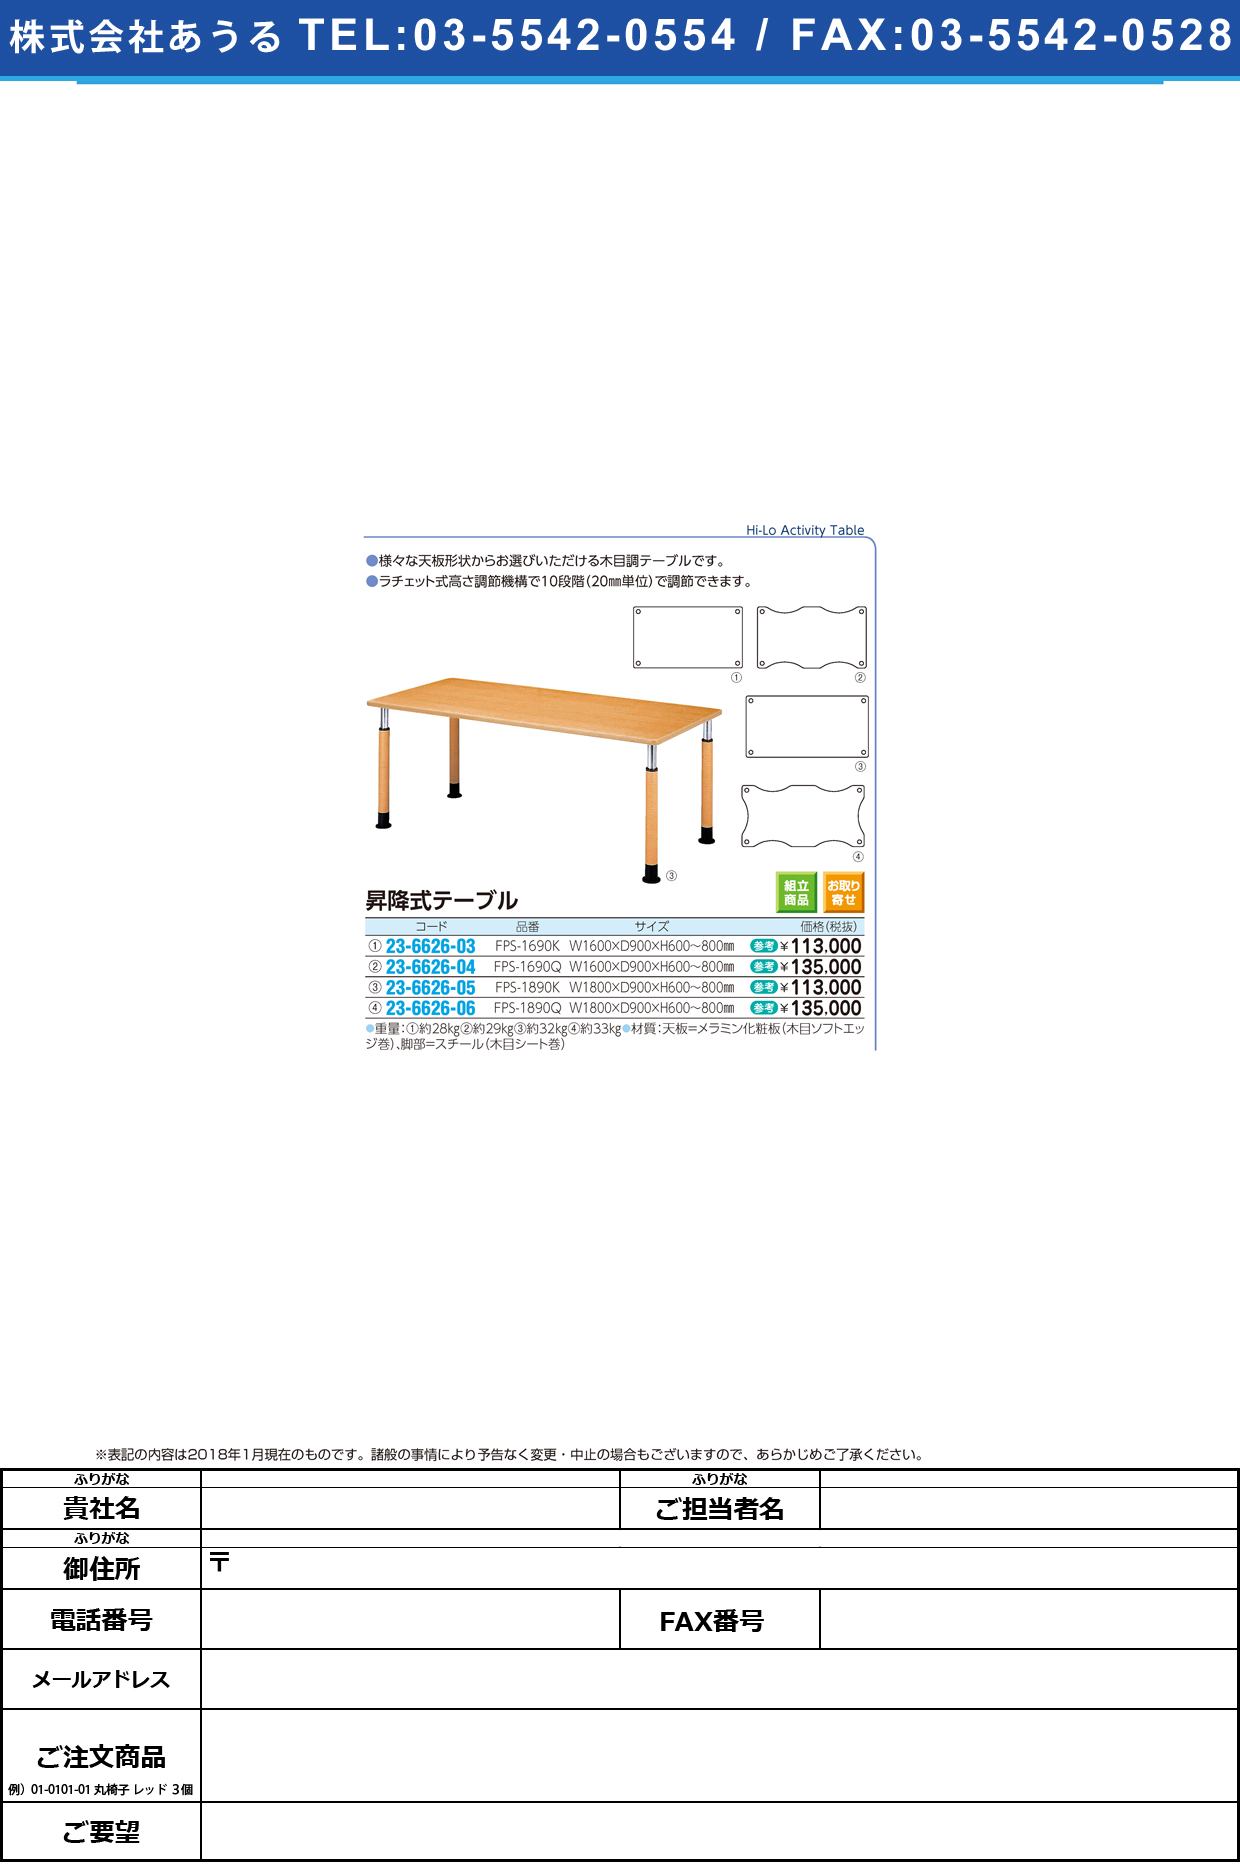 (23-6626-04)昇降式テーブル FPS-1690Q(W160XD90CM ｼｮｳｺｳｼｷﾃｰﾌﾞﾙ【1台単位】【2019年カタログ商品】